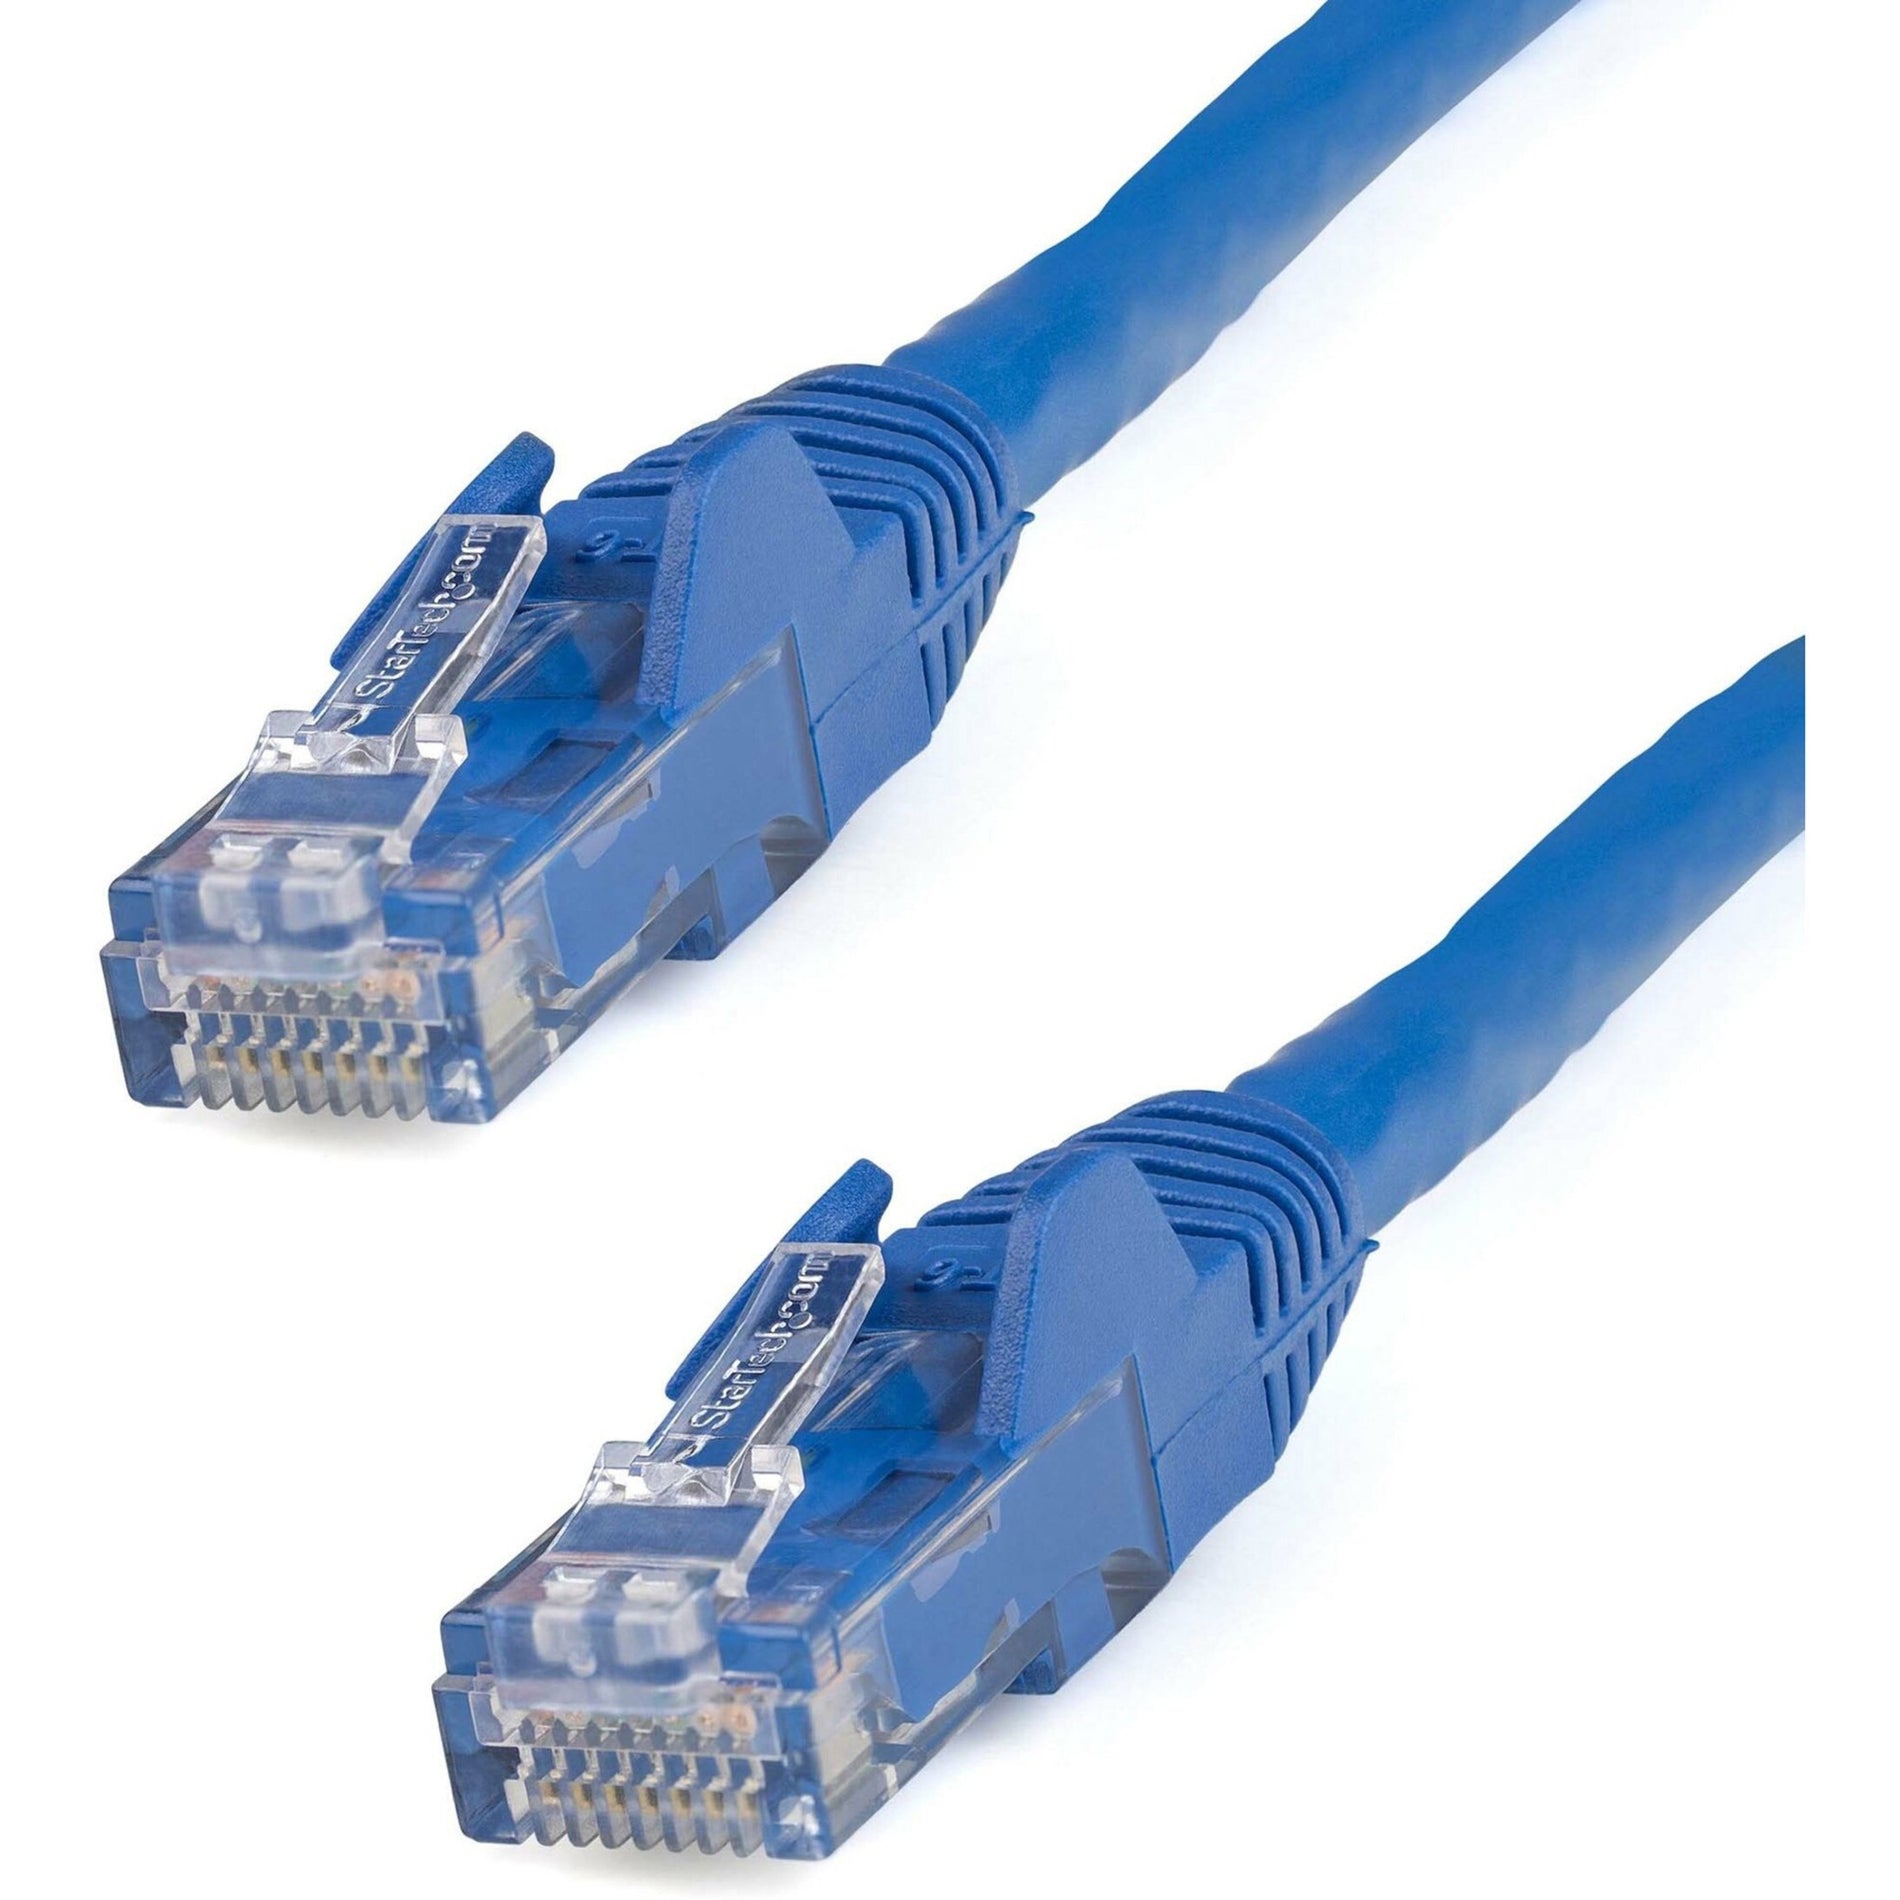 StarTech.com N6PATCH125BL Cat6 Patch Cable, 125ft Blue Ethernet Cable, Snagless RJ45 Connectors